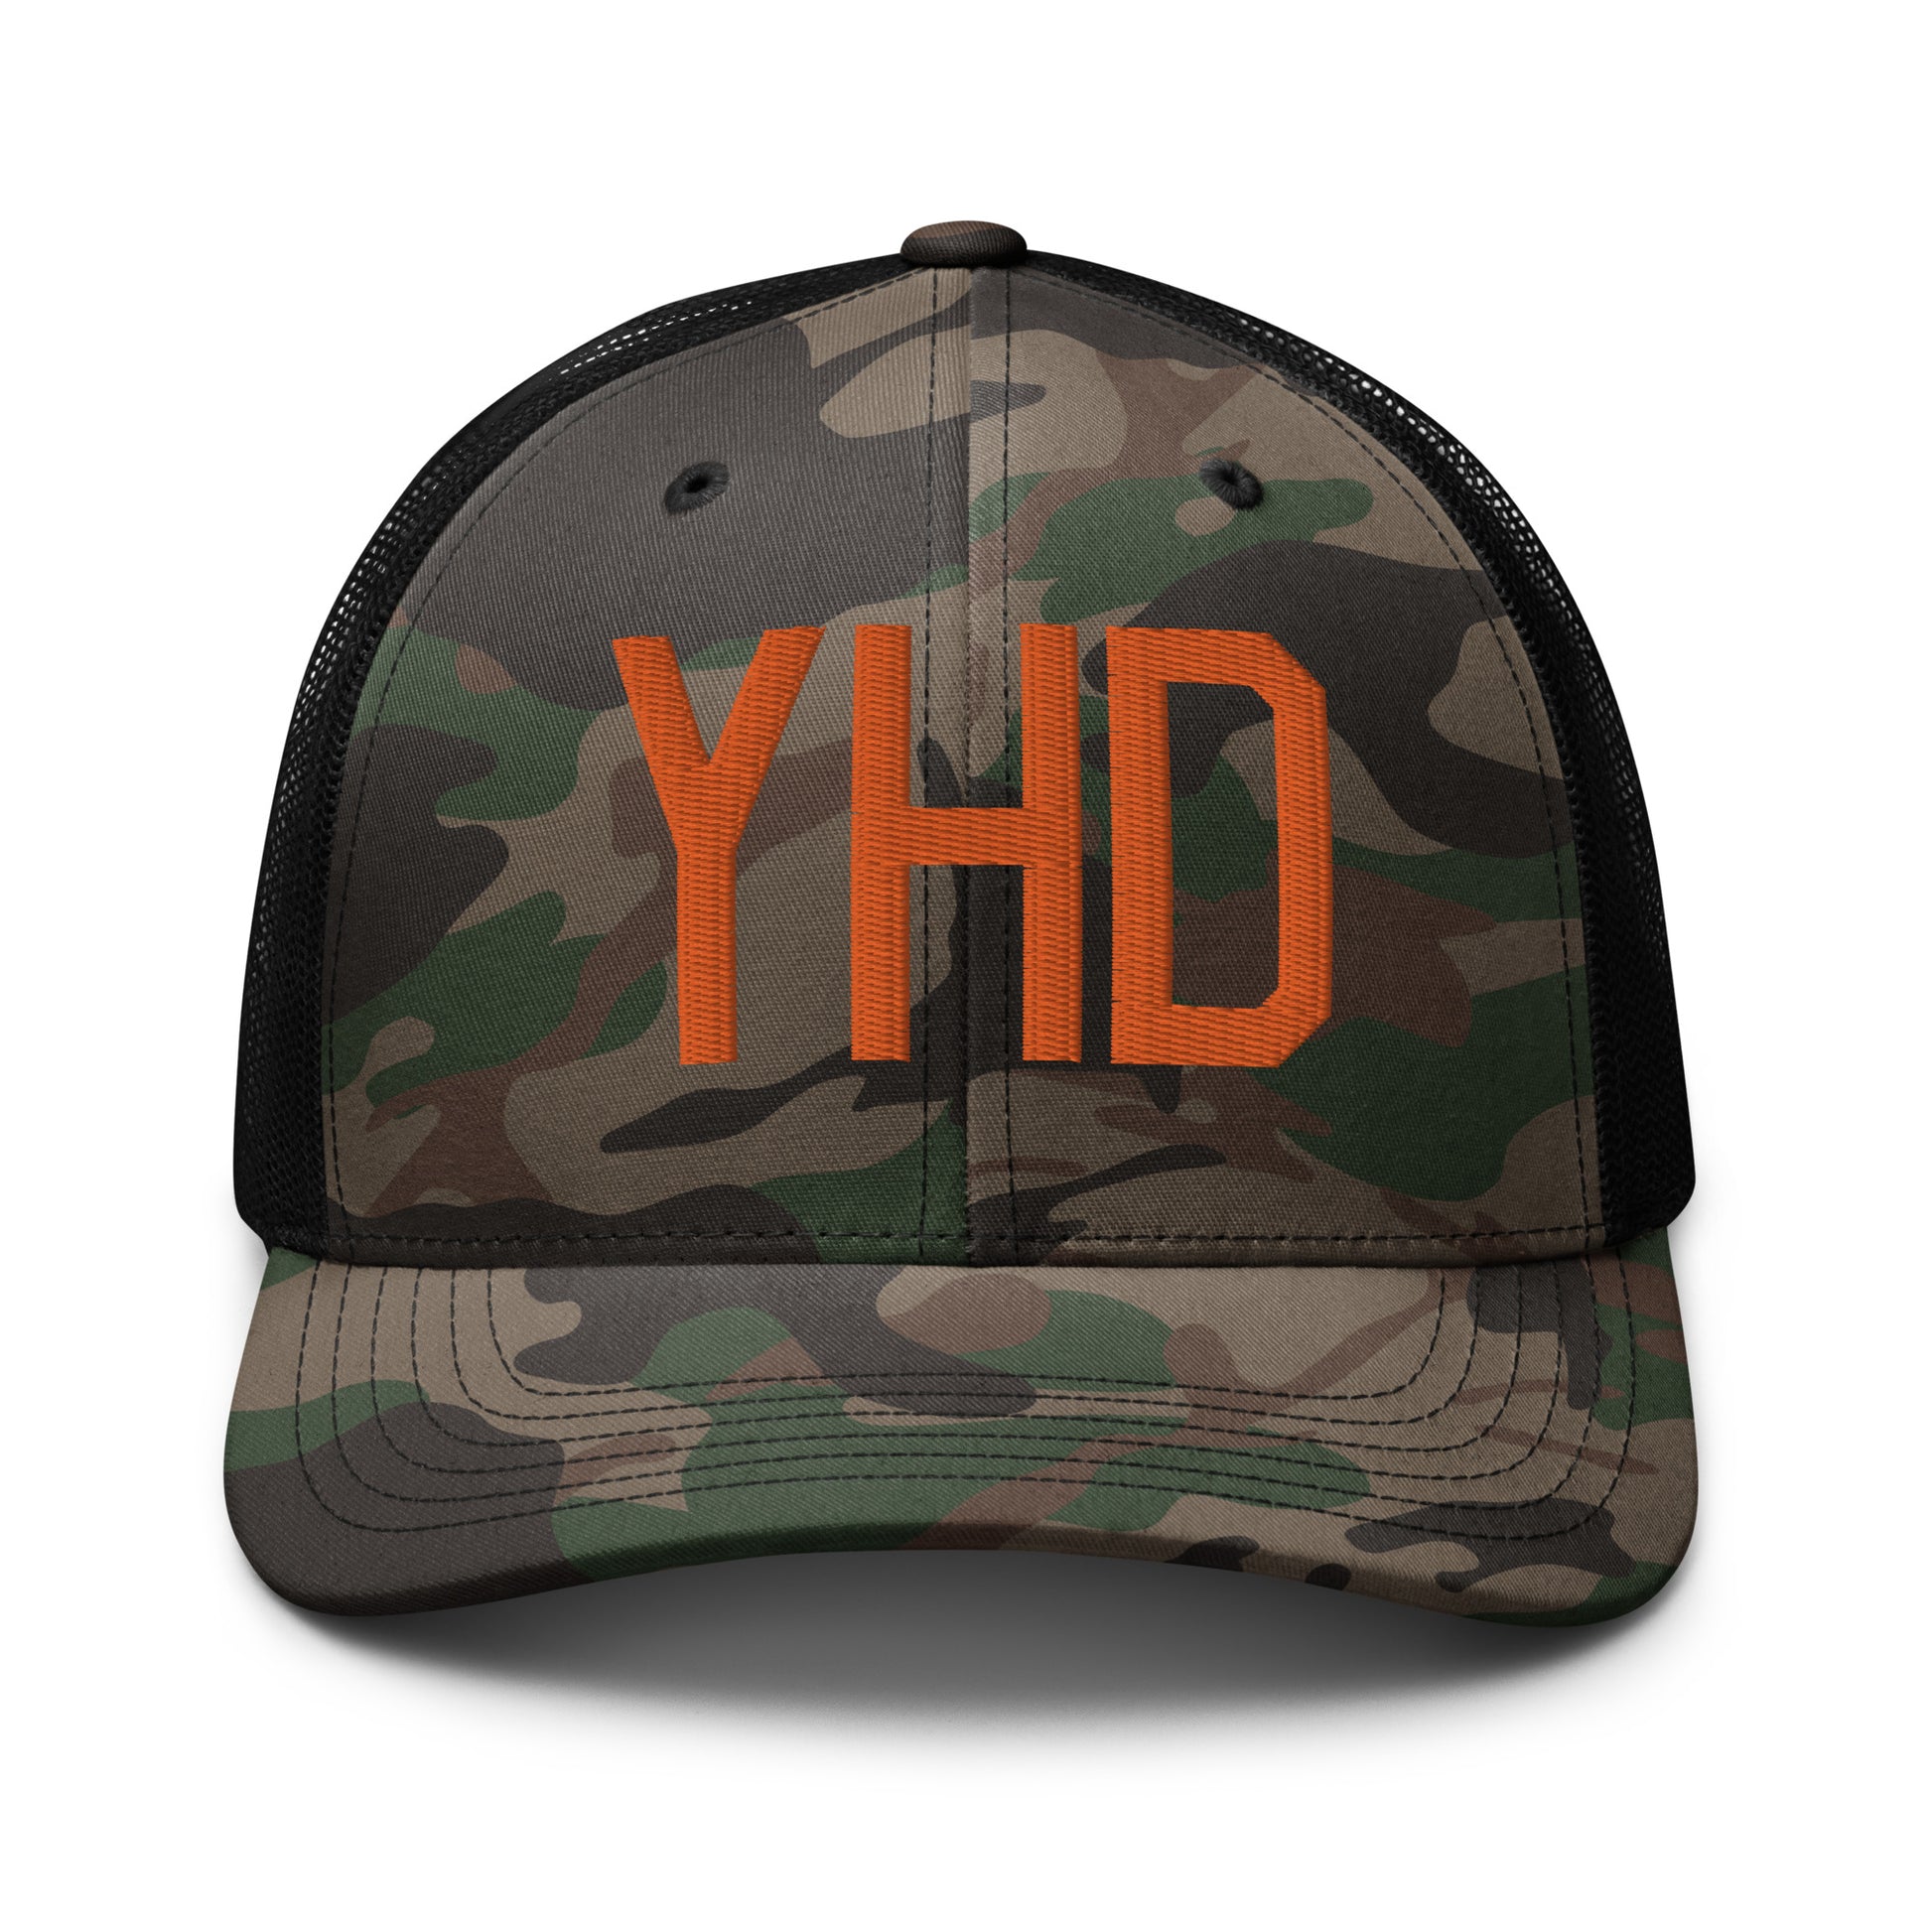 Airport Code Camouflage Trucker Hat - Orange • YHD Dryden • YHM Designs - Image 10